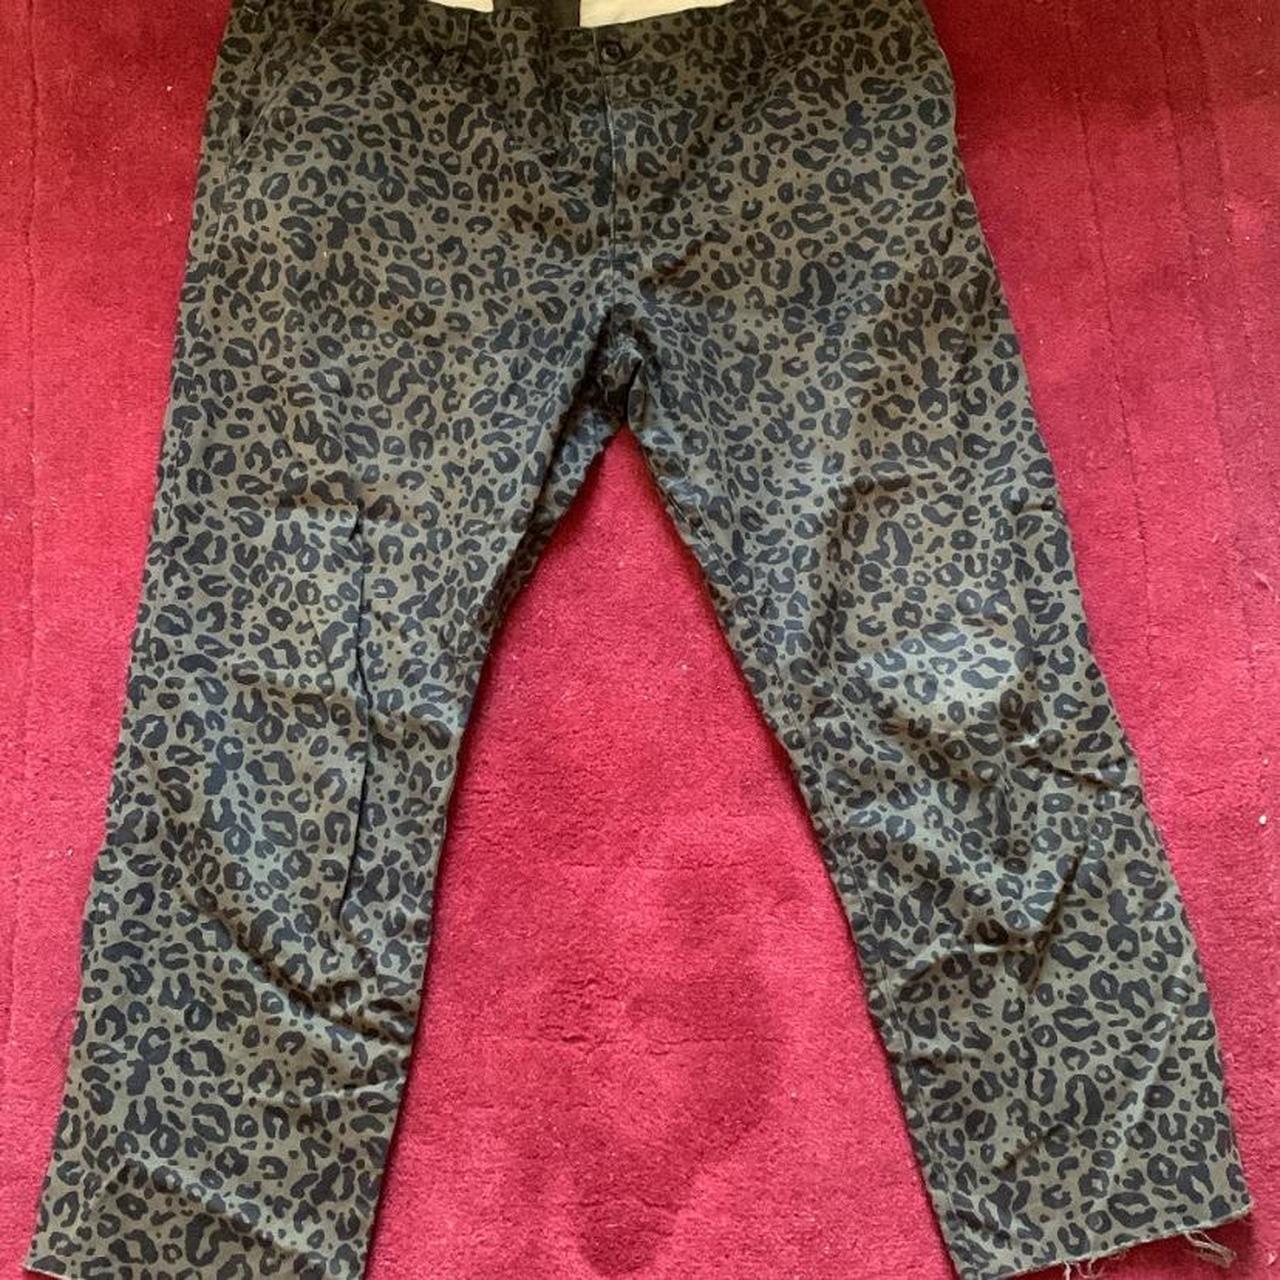 Leopard print green cut off carhartt trousers. Waist... - Depop